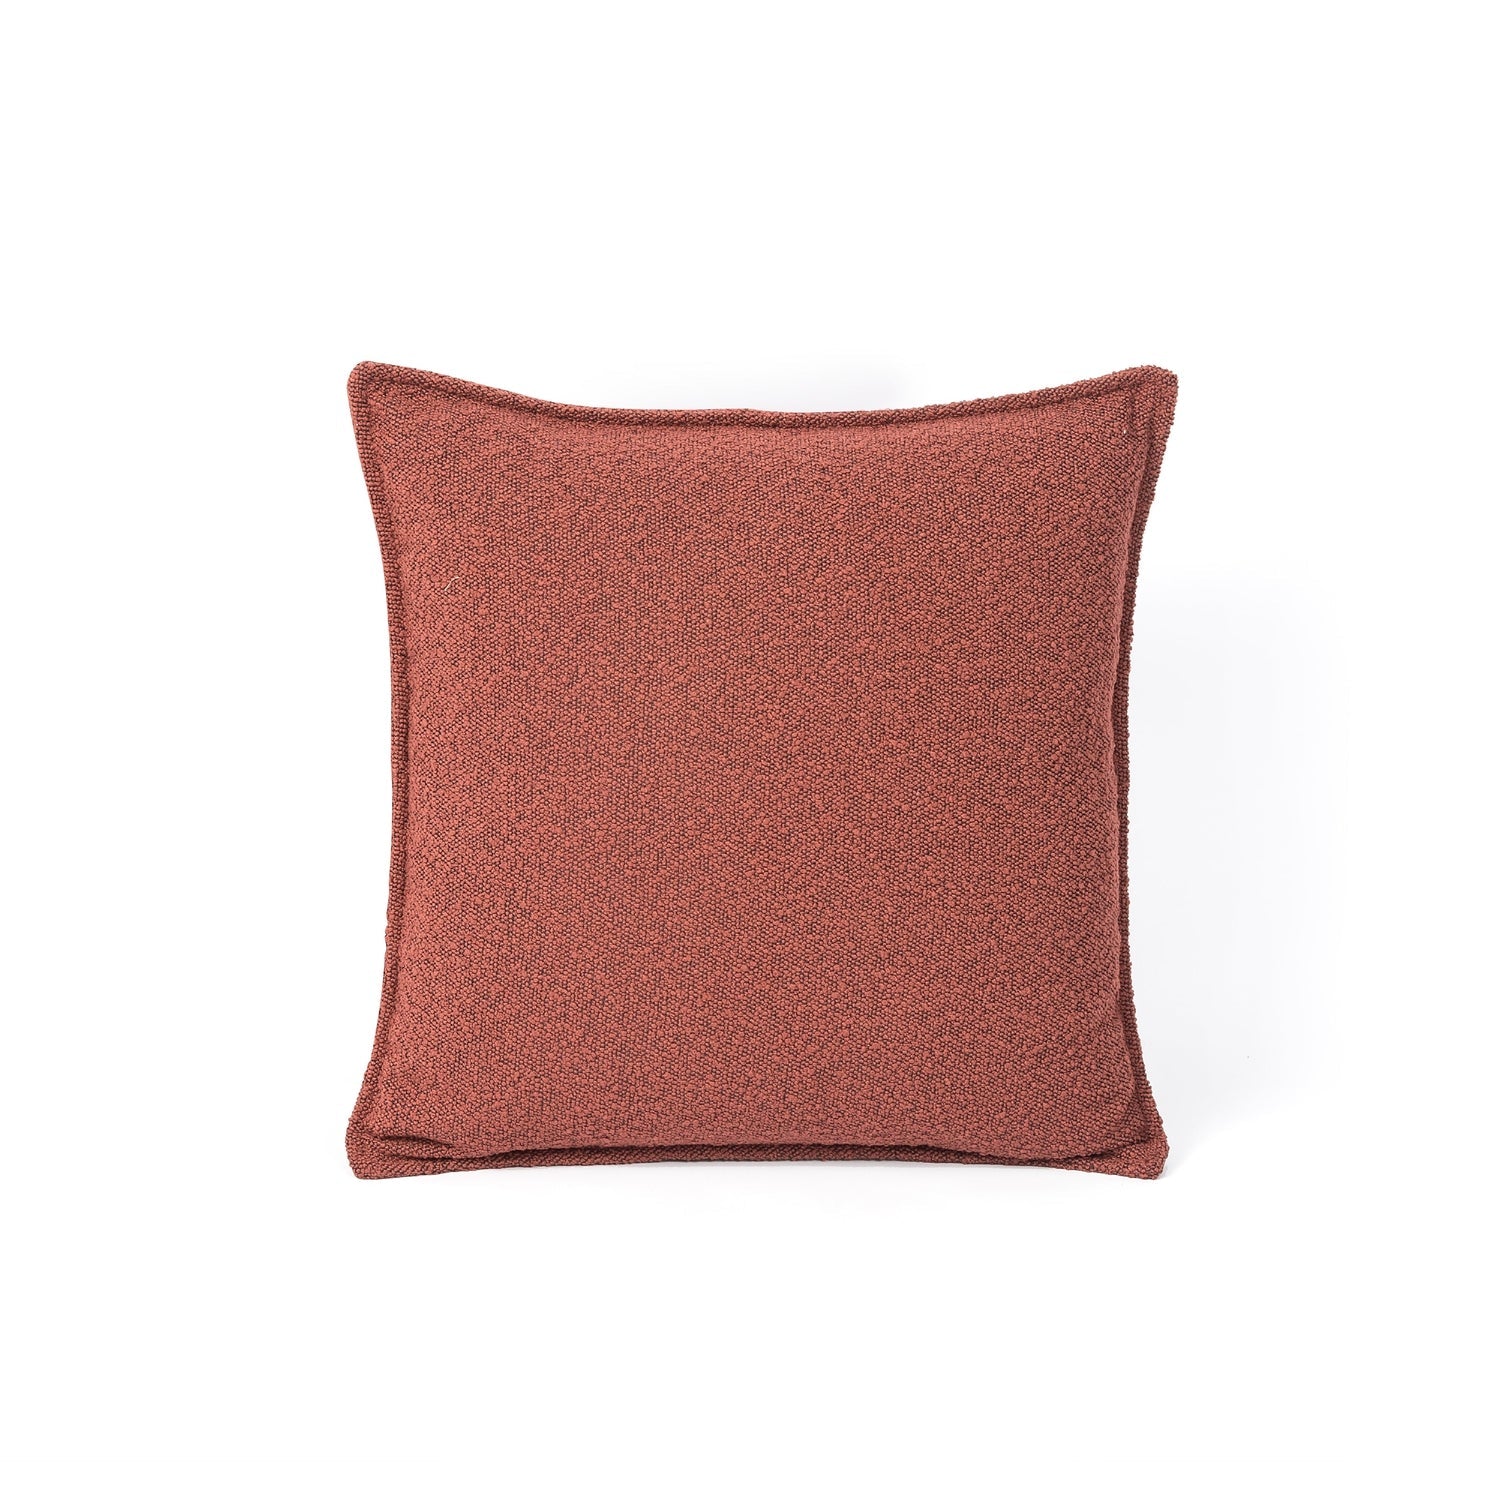 Boucle Pillow - Copenhagen Garnet - 20"x20"-Four Hands-FH-227270-011-Pillows-1-France and Son